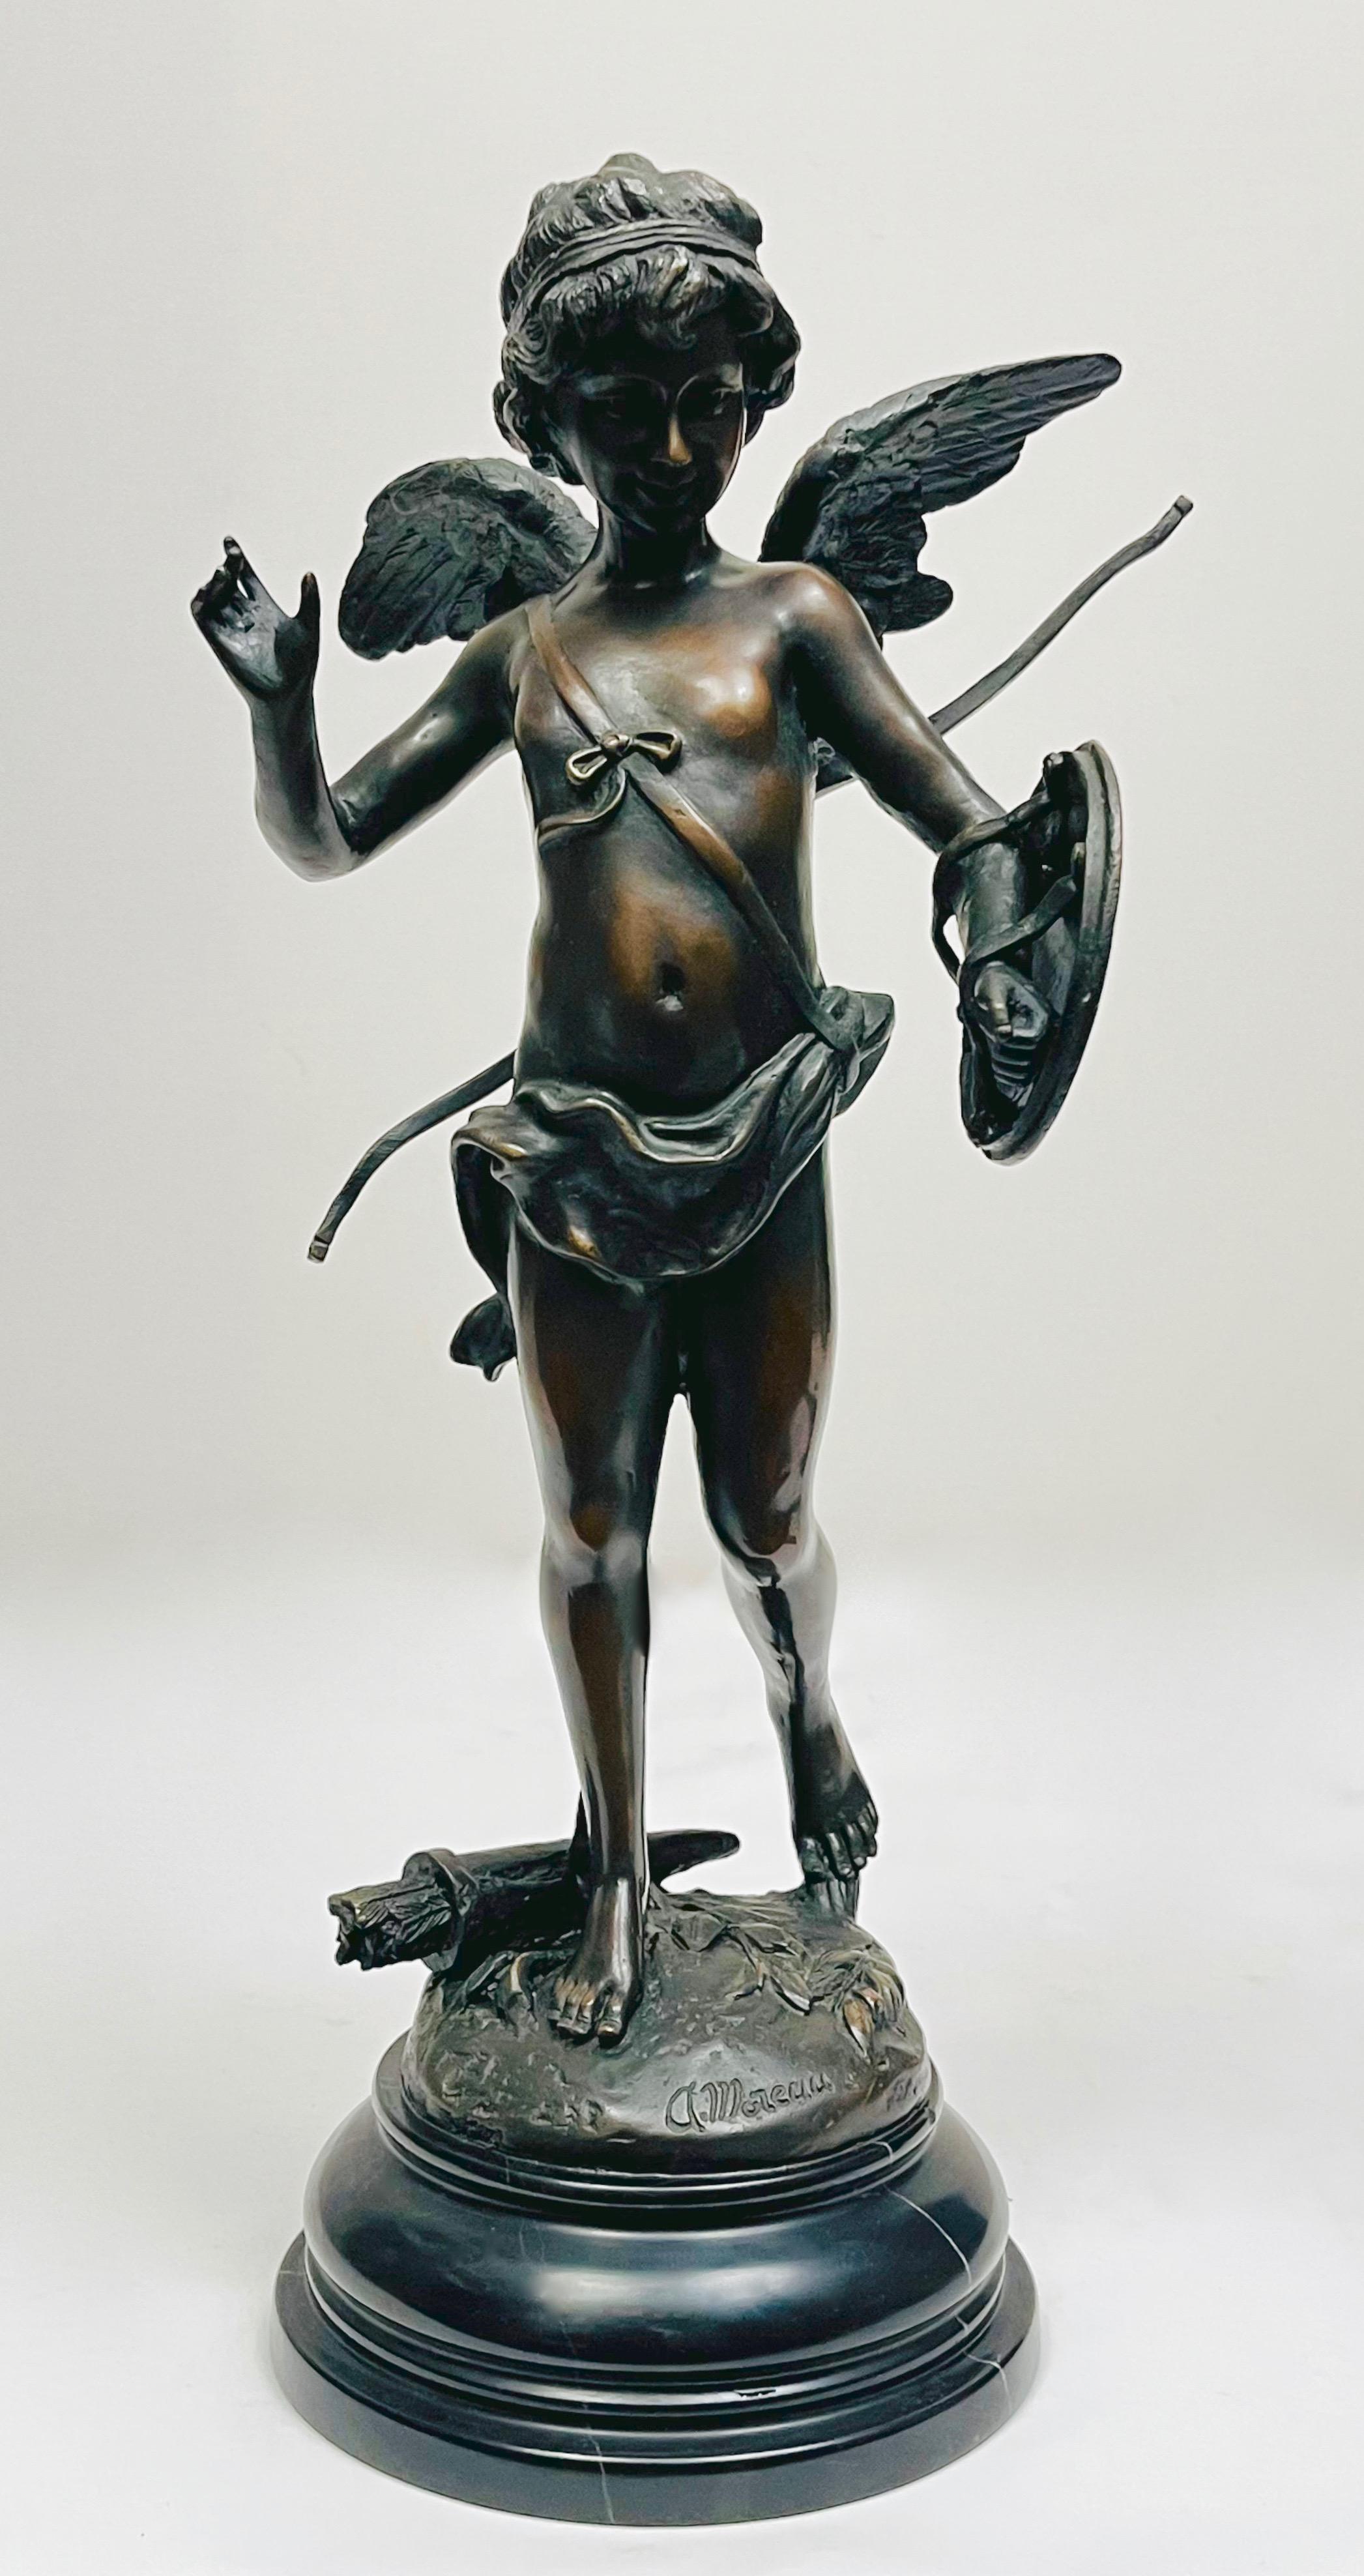 Dekoracyjna figura cherubina stojąca na postumencie z marmurowym cokołem